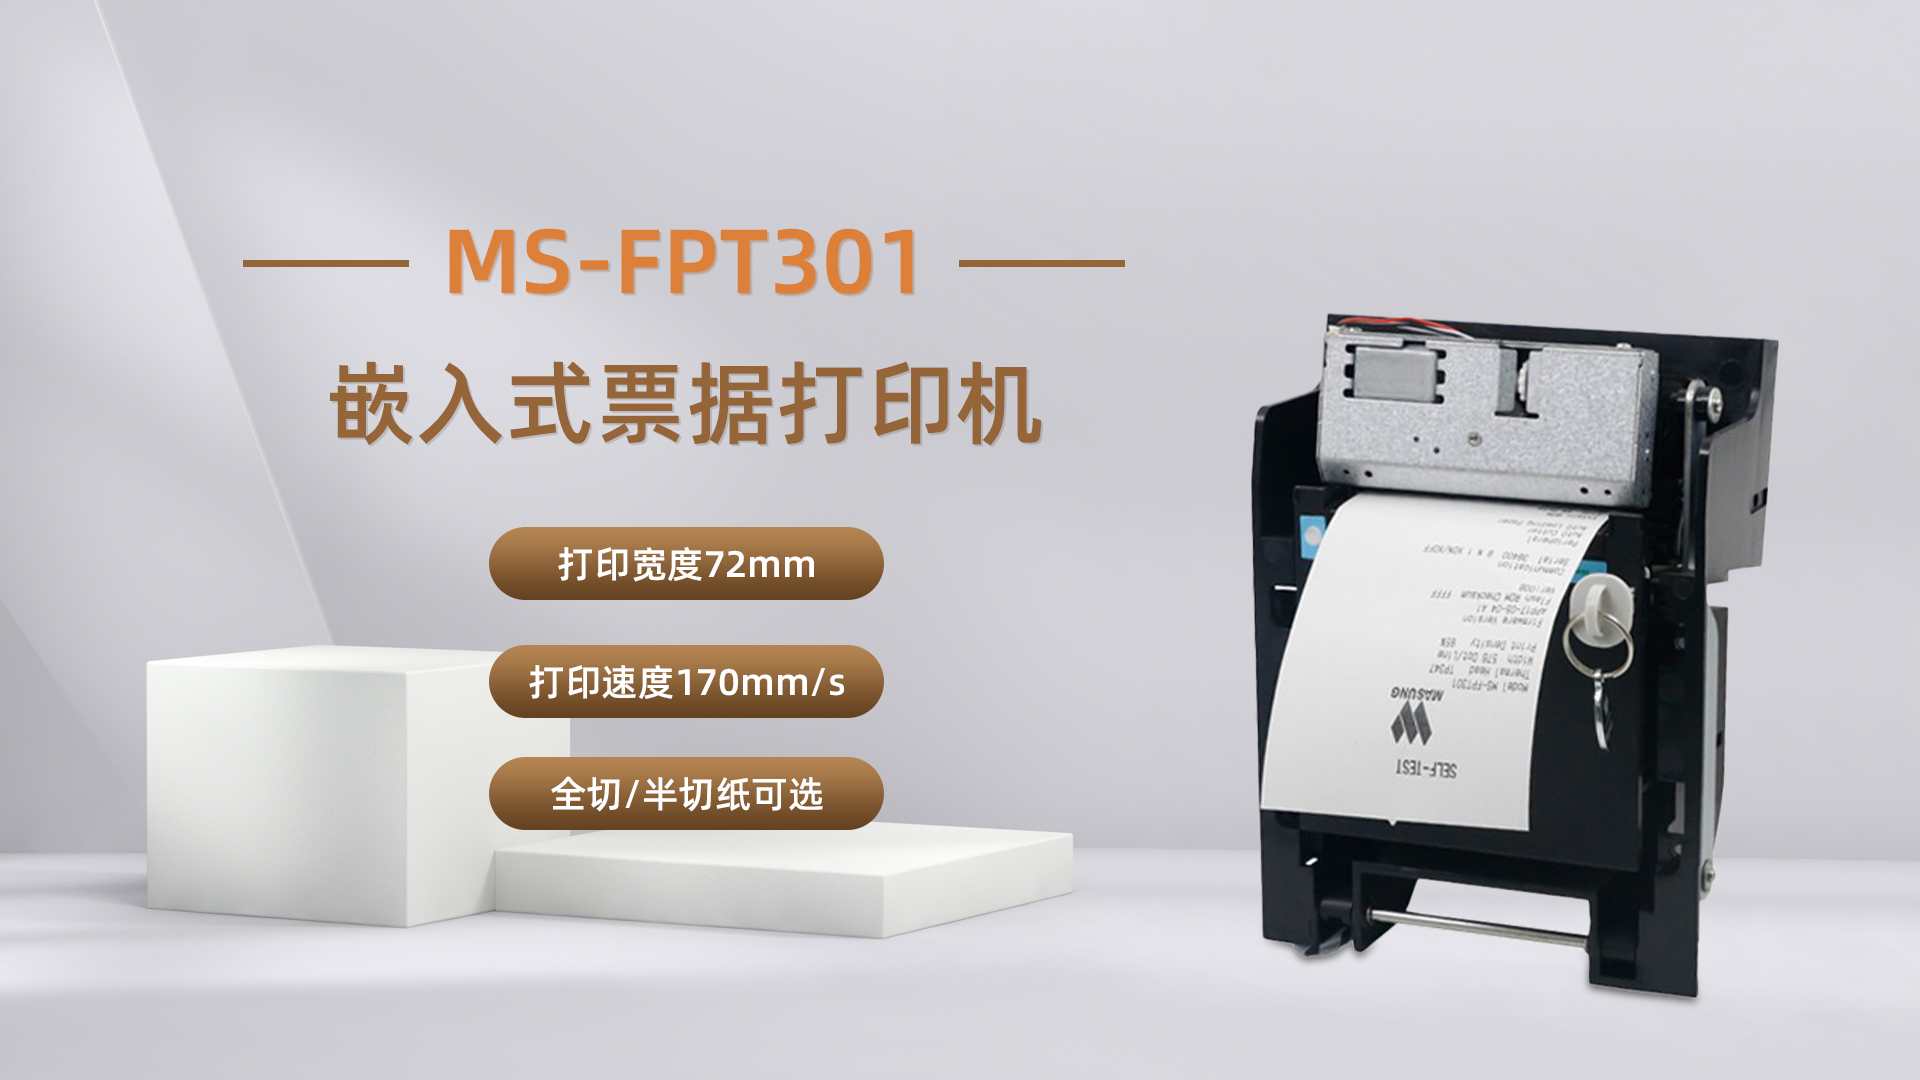 美松打印机MS-FPT301为自助排队取票机提供解决方案